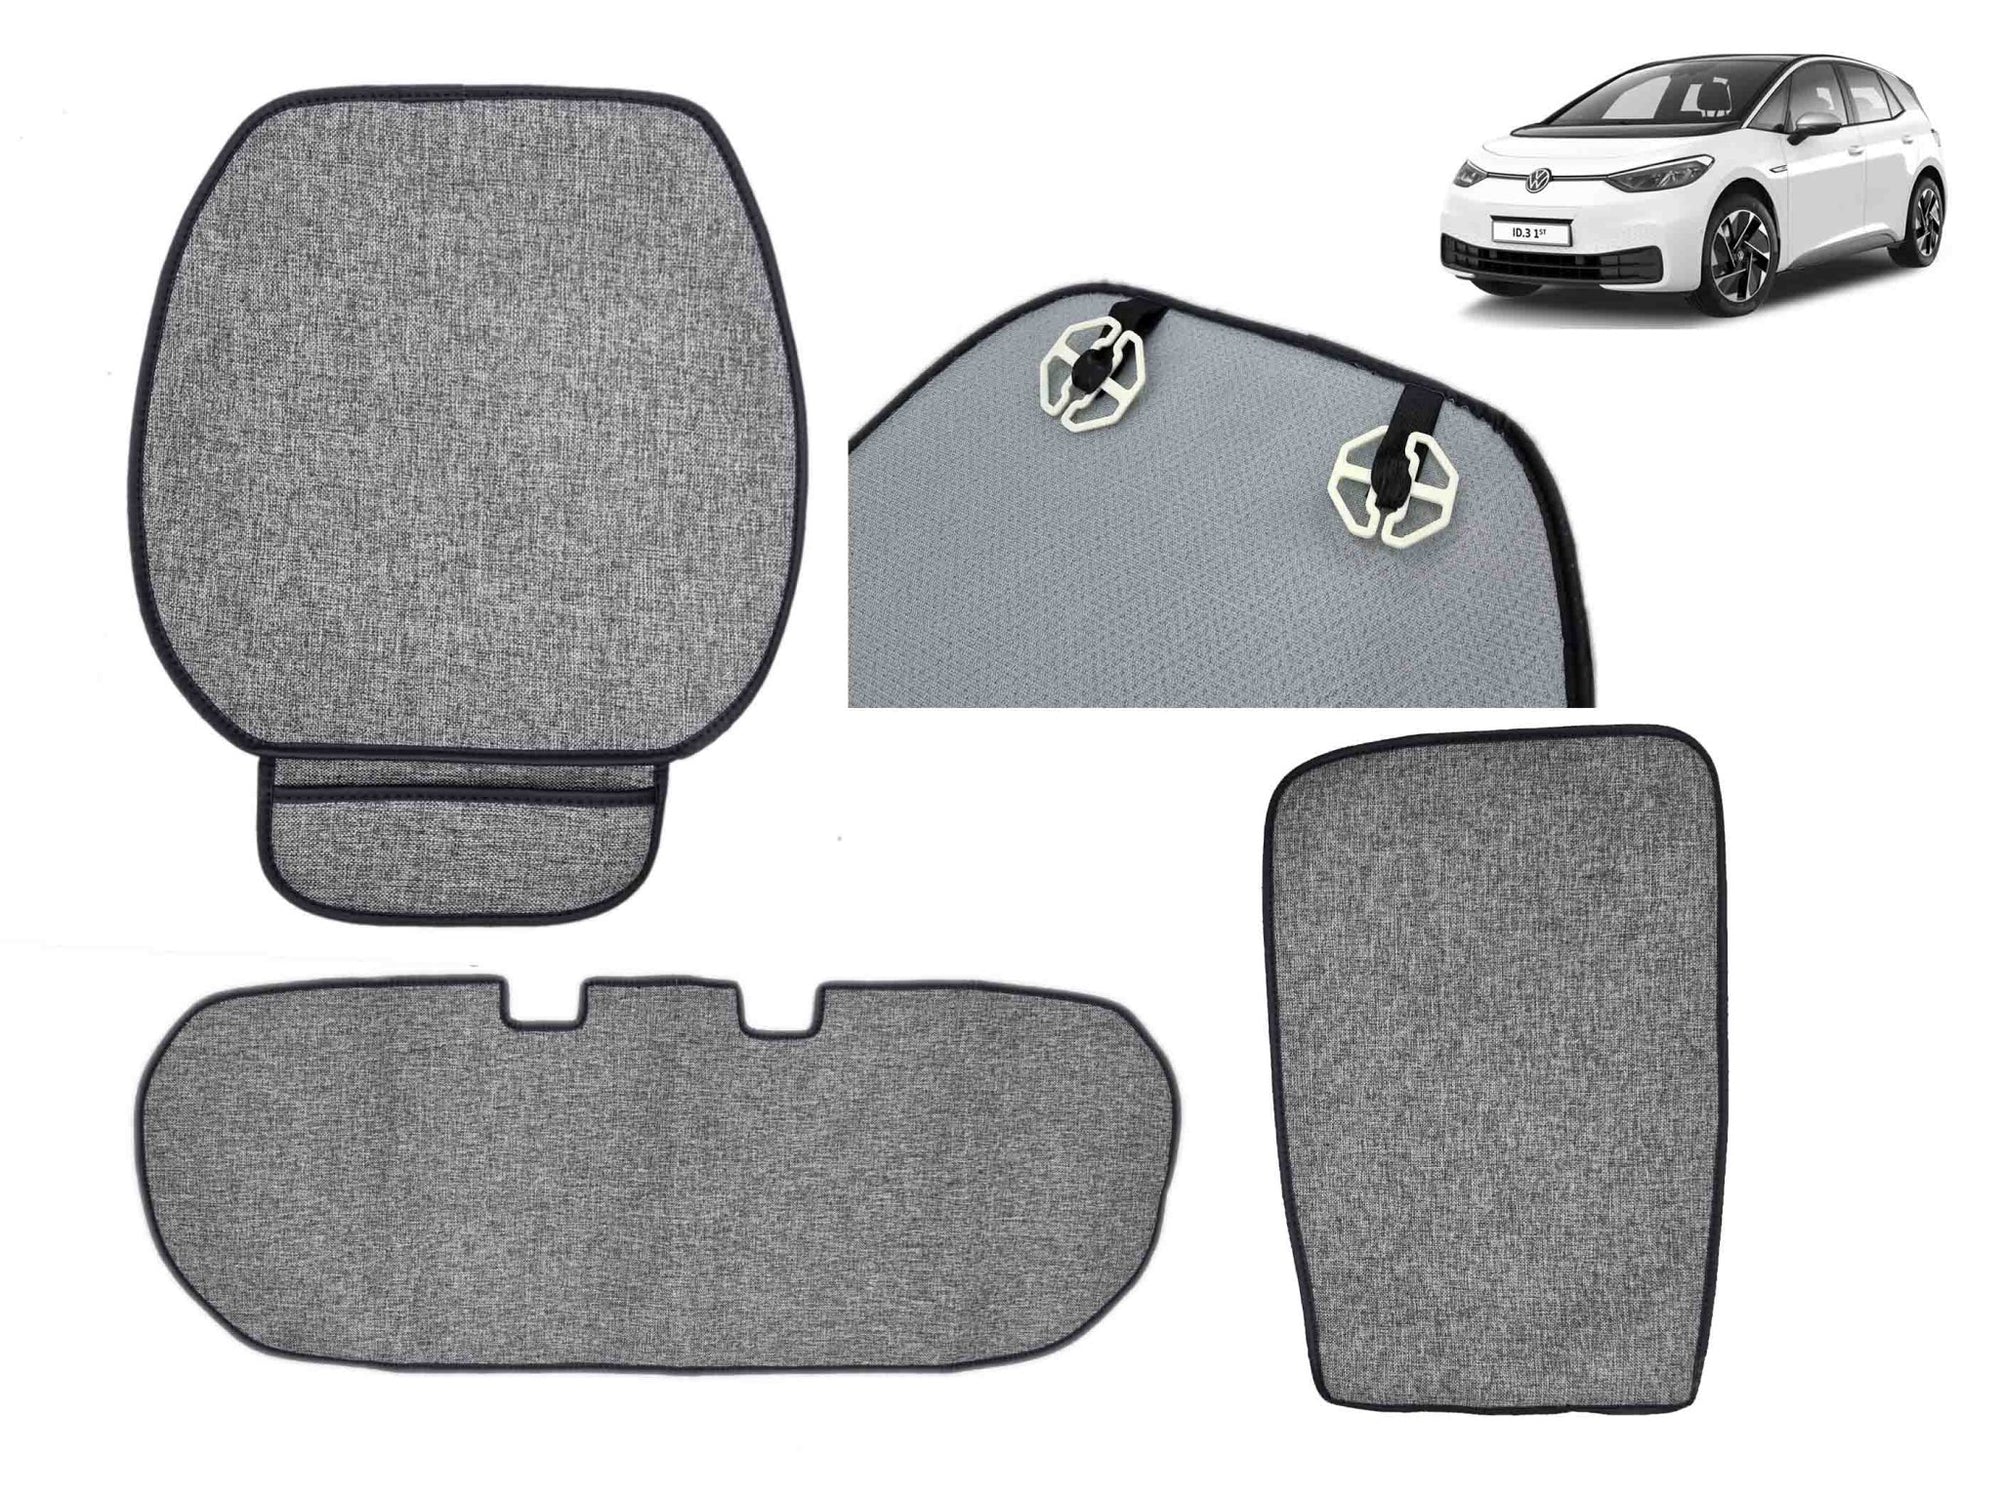 VW ID 3 : Jeu de housses de siège, jeu de protections de siège (7 pièces) - Torque Alliance